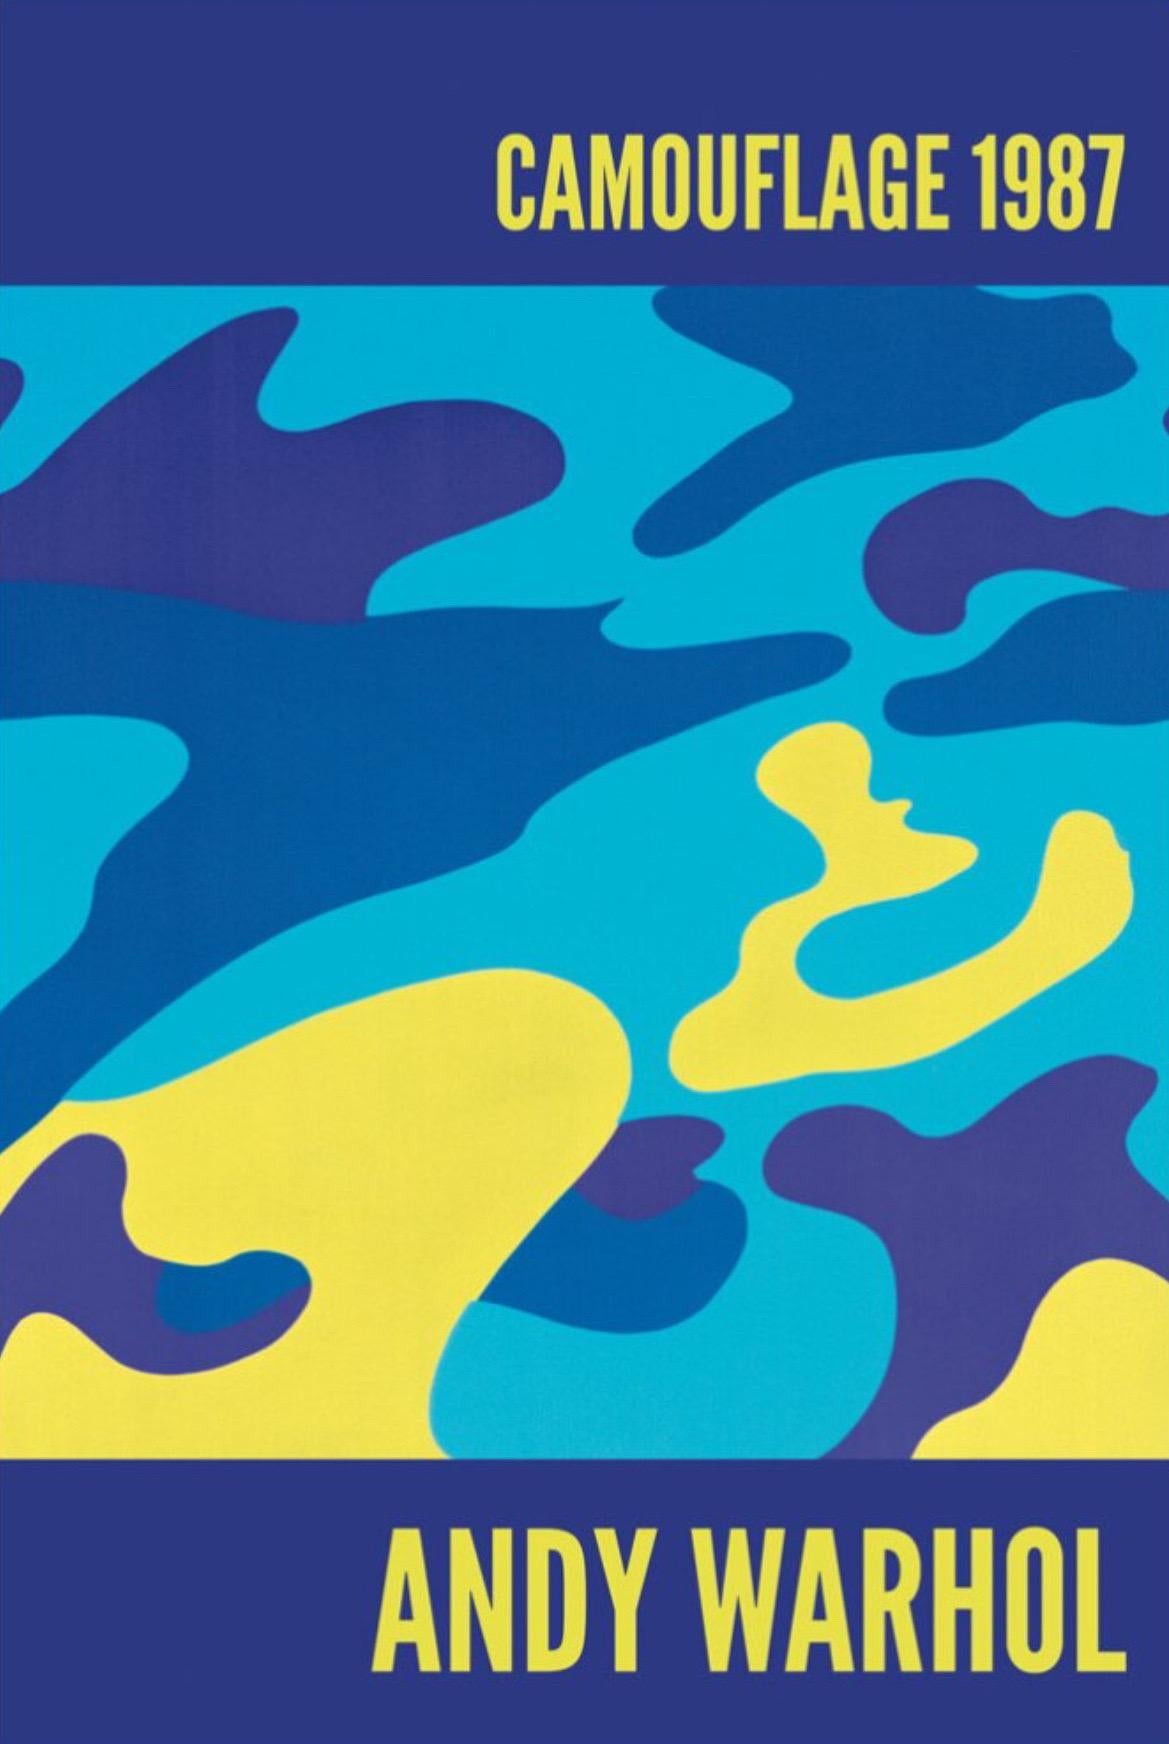 Andy Warhol, Tarnung, 1987

Mattes 250 g/m² konserviertes Digitalpapier

60 x 90 cm (23.62 x 35.43 in) 

Andy Warhols Serie der Camouflages enthält alles, was er über die Kunst, über sich selbst und über uns sagen wollte. In der Serie der